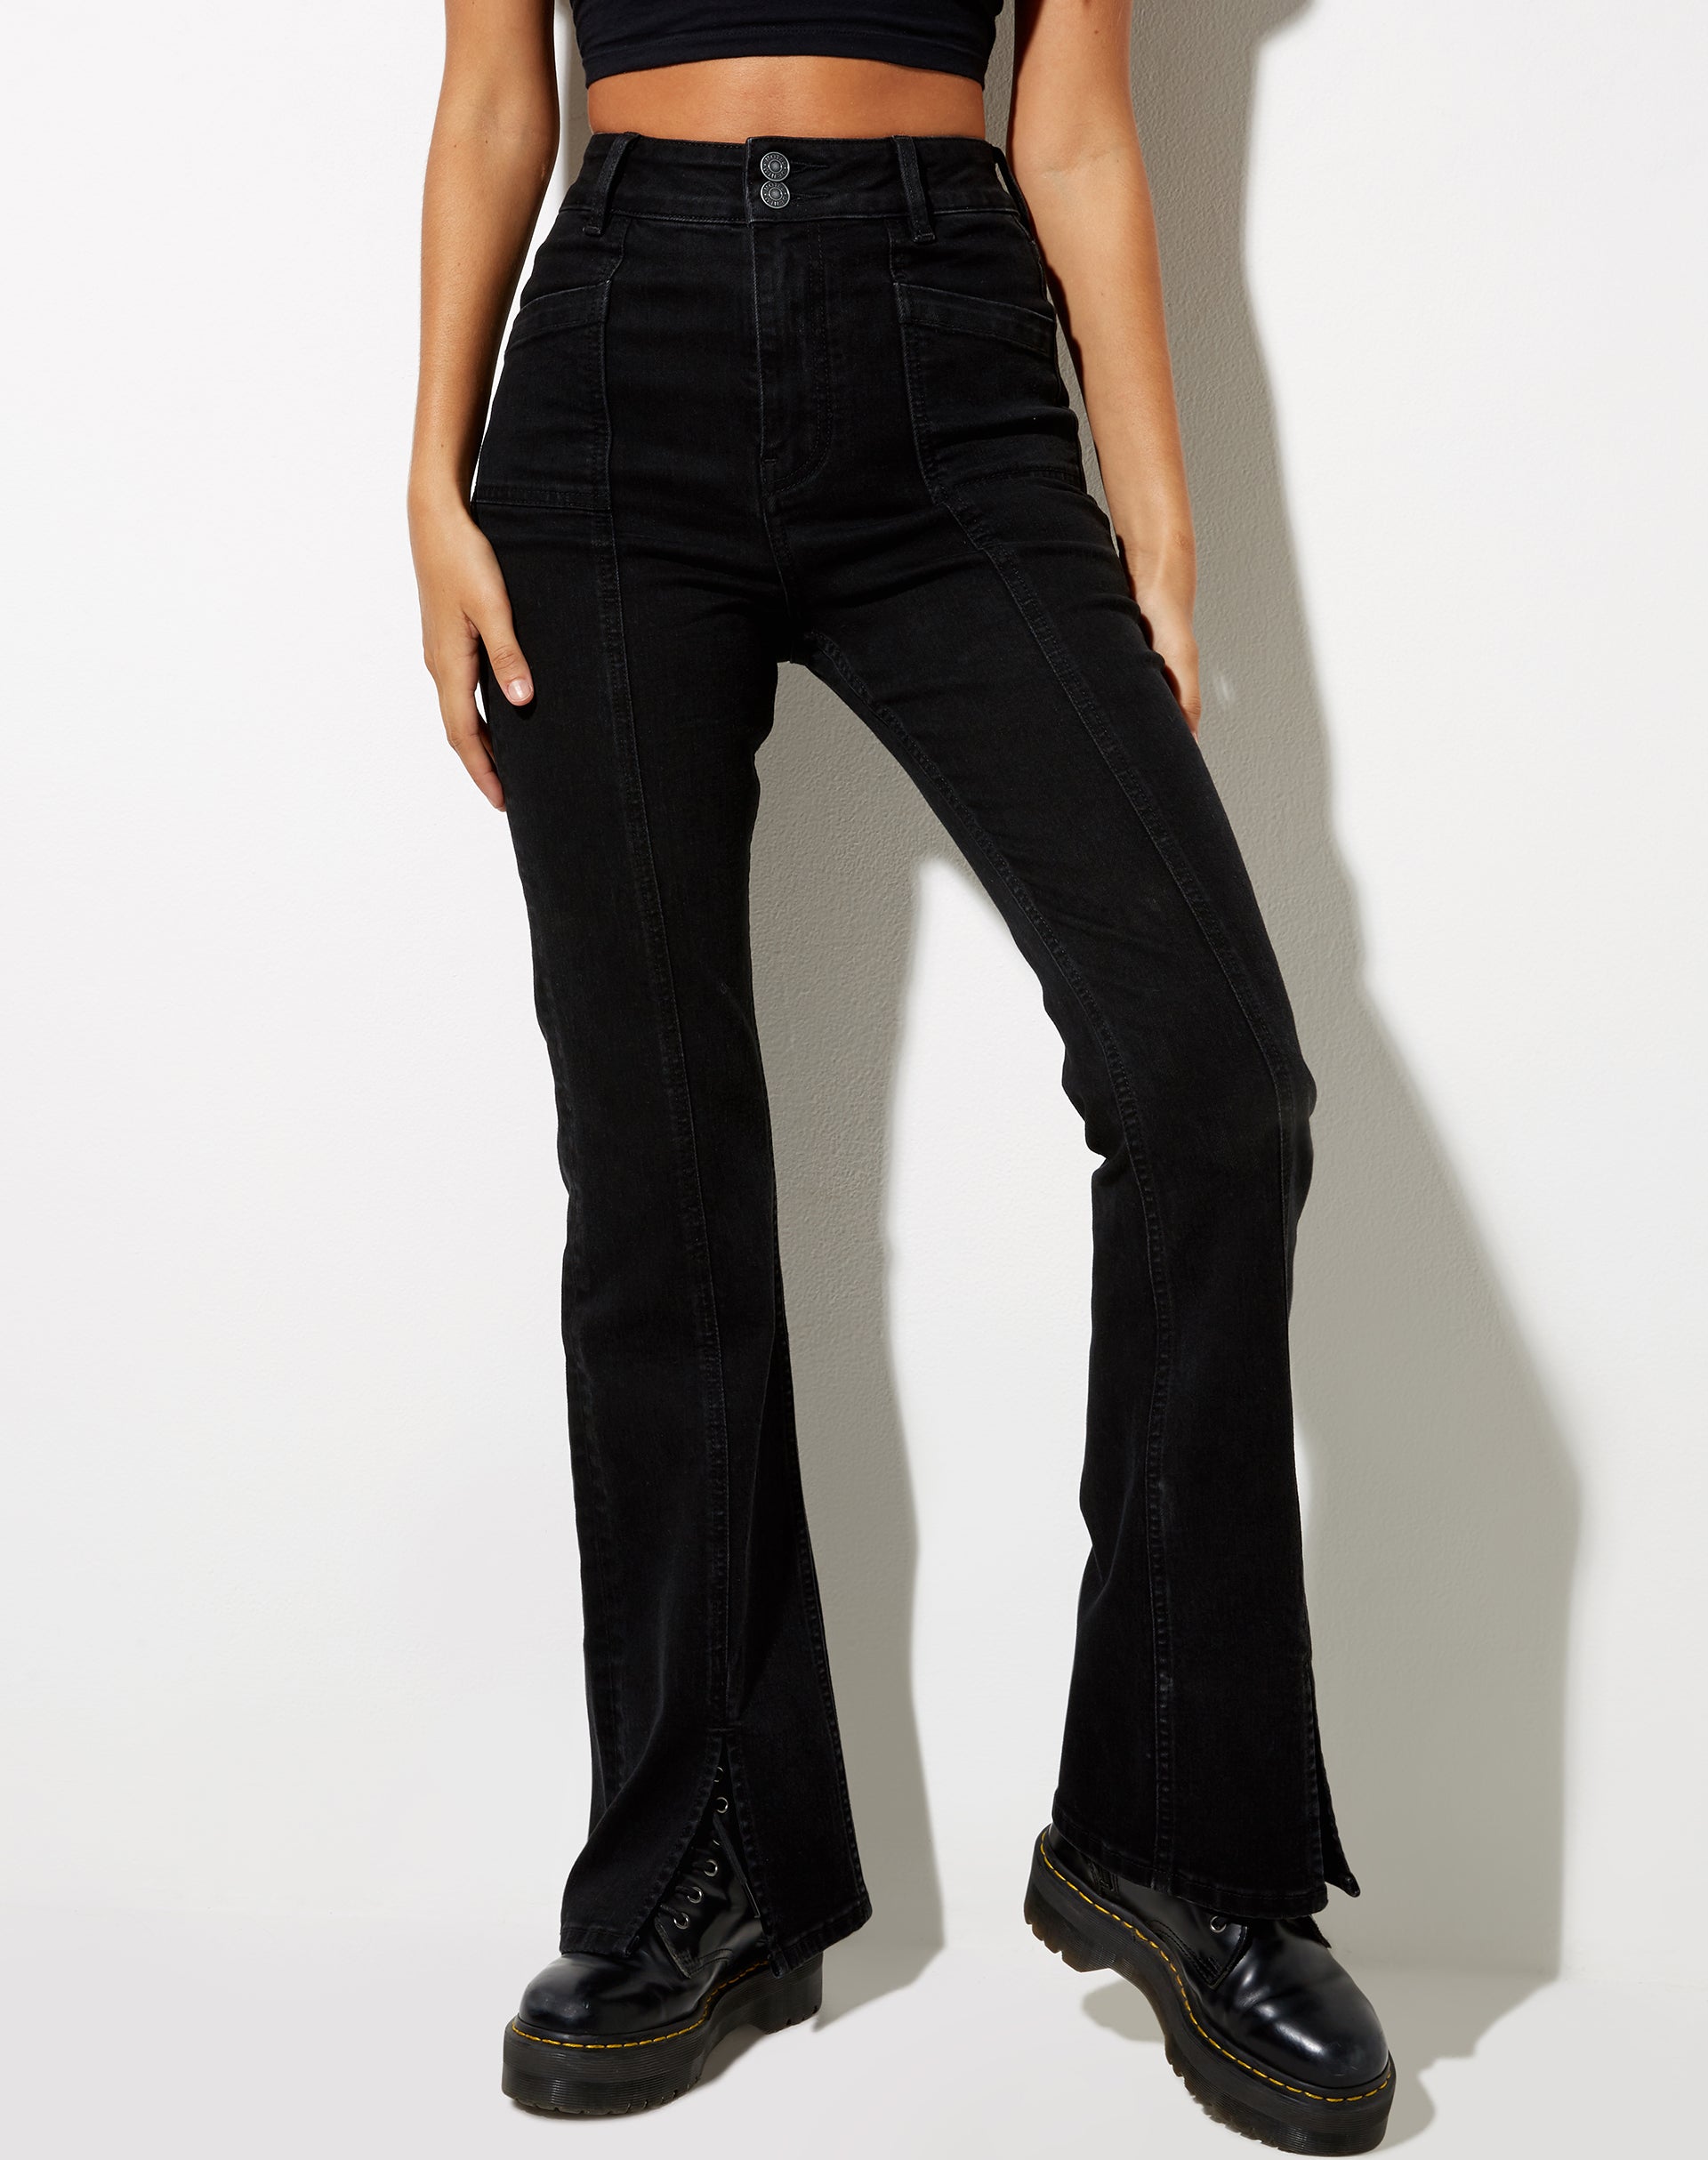 Image of Seam Split Jeans in Black Wash